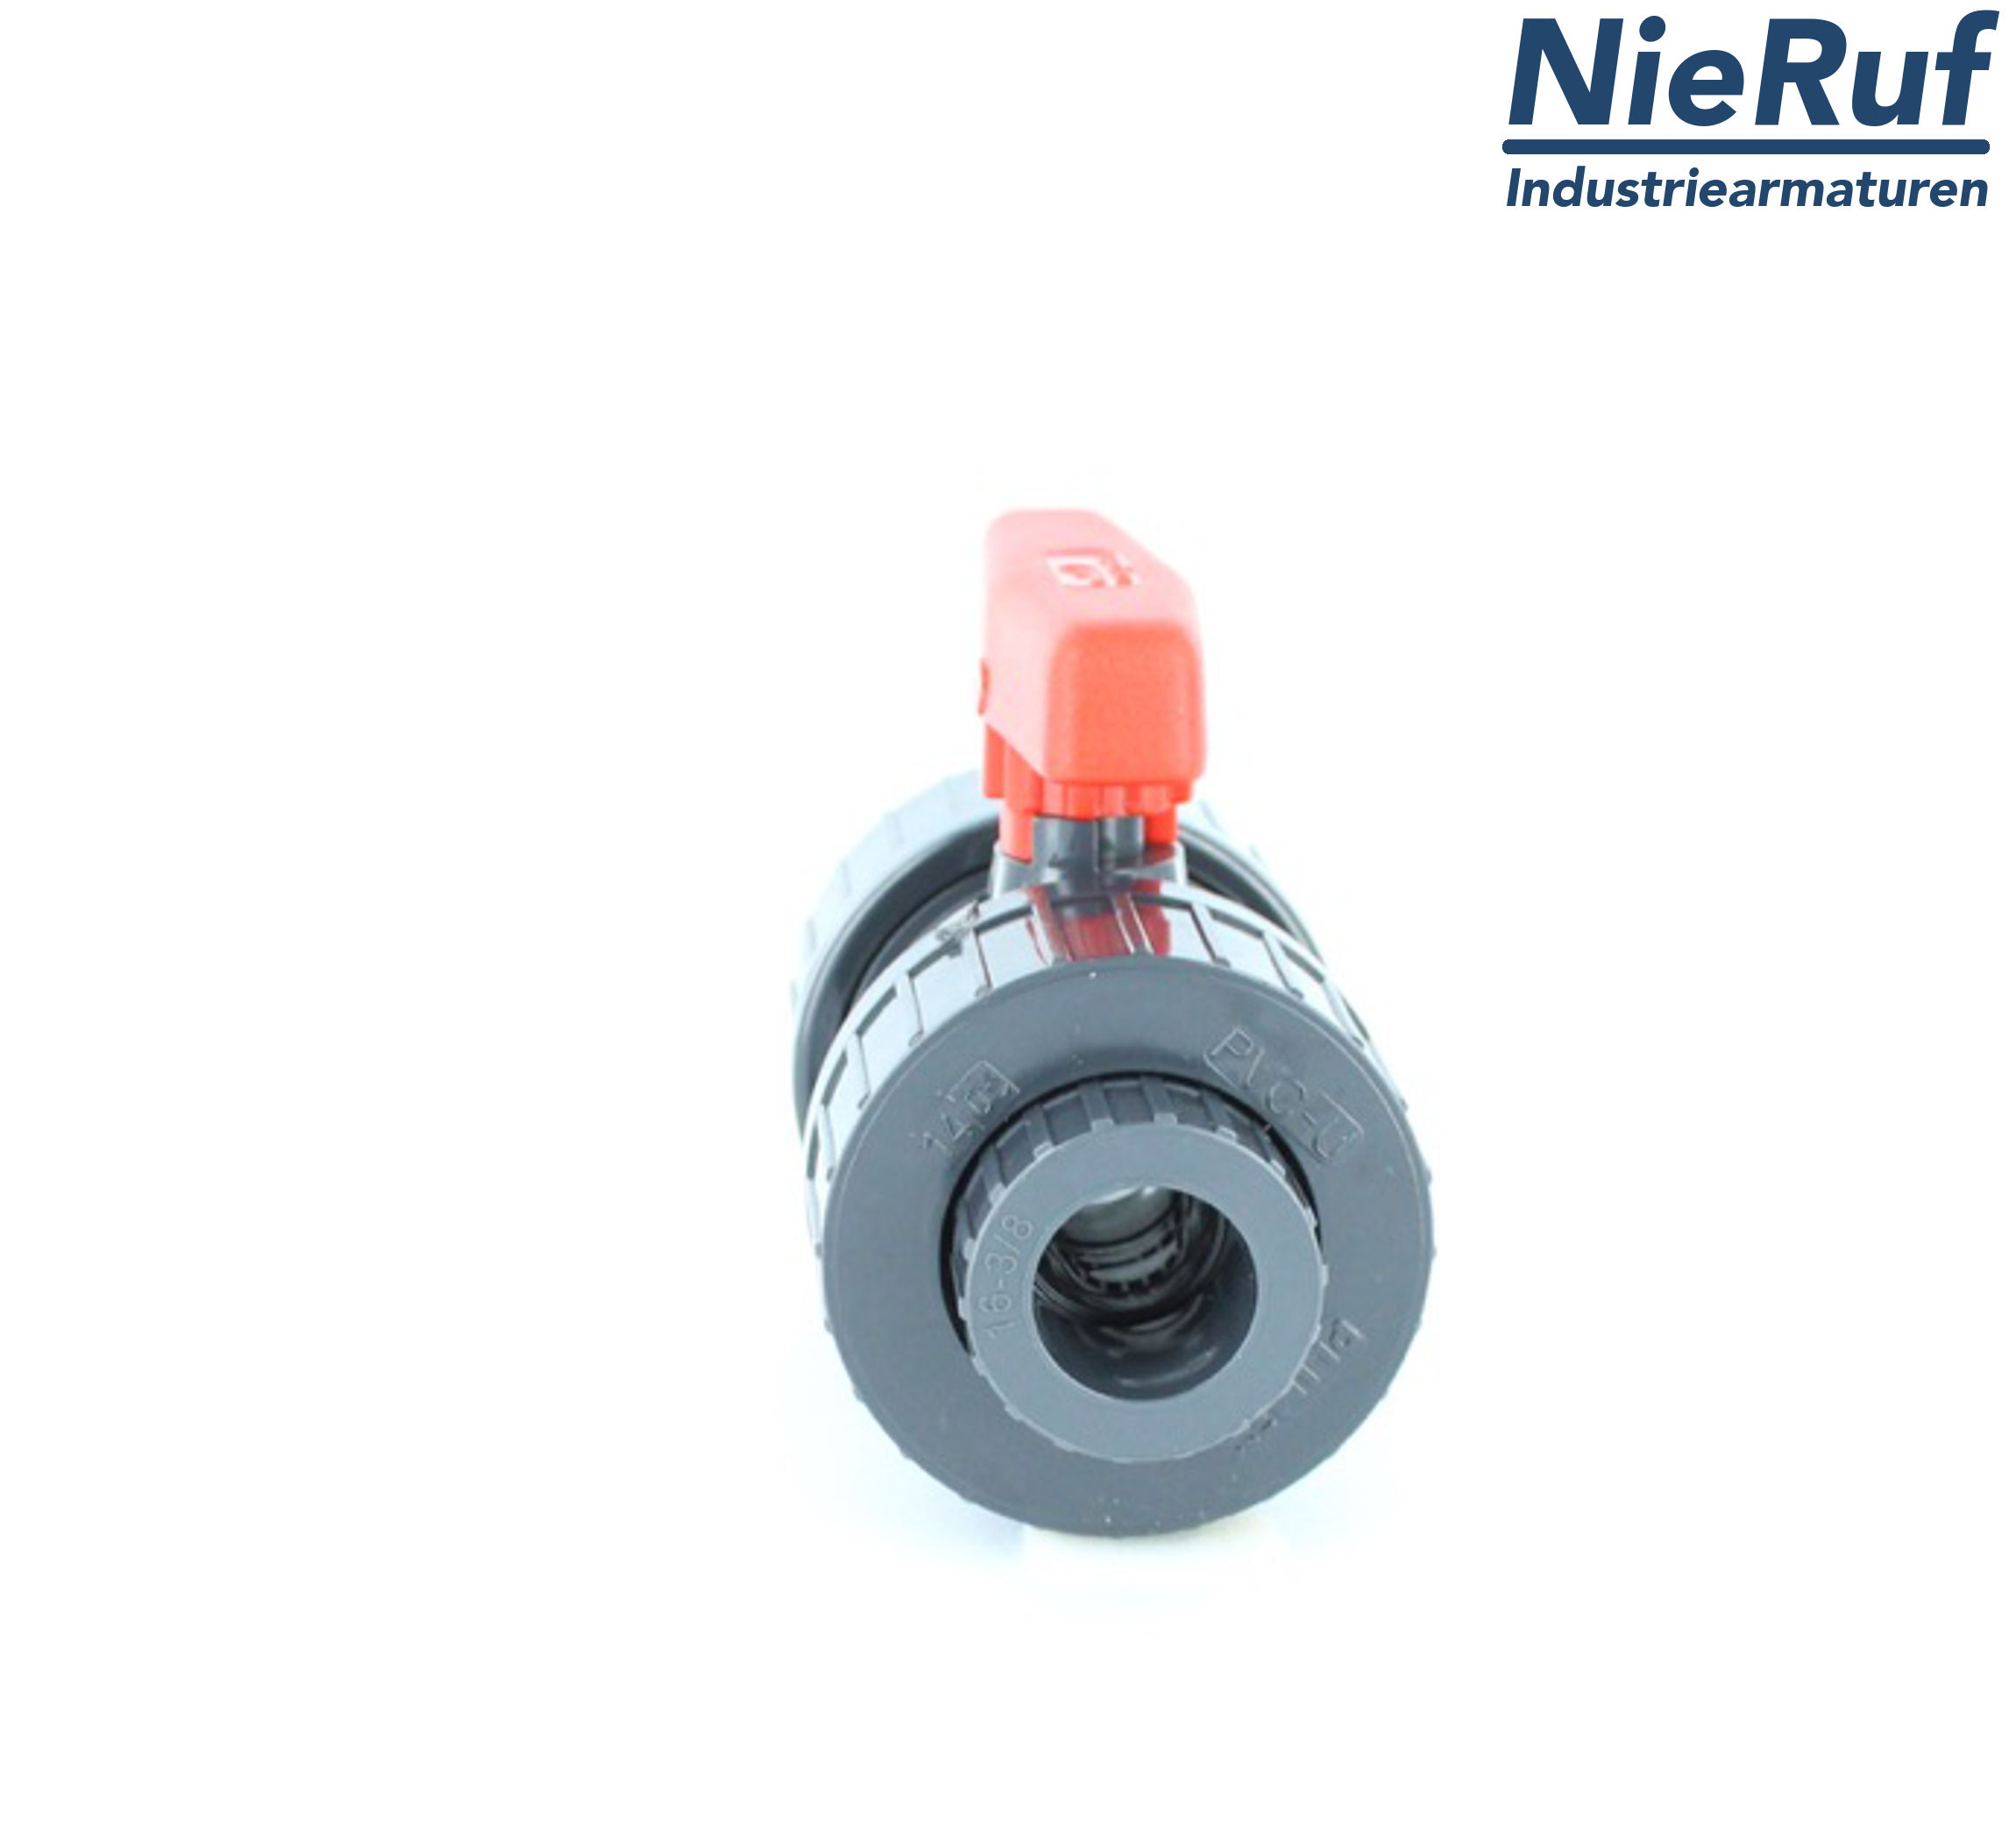 PVC-ball valve d 50 KK01 PTFE/Viton